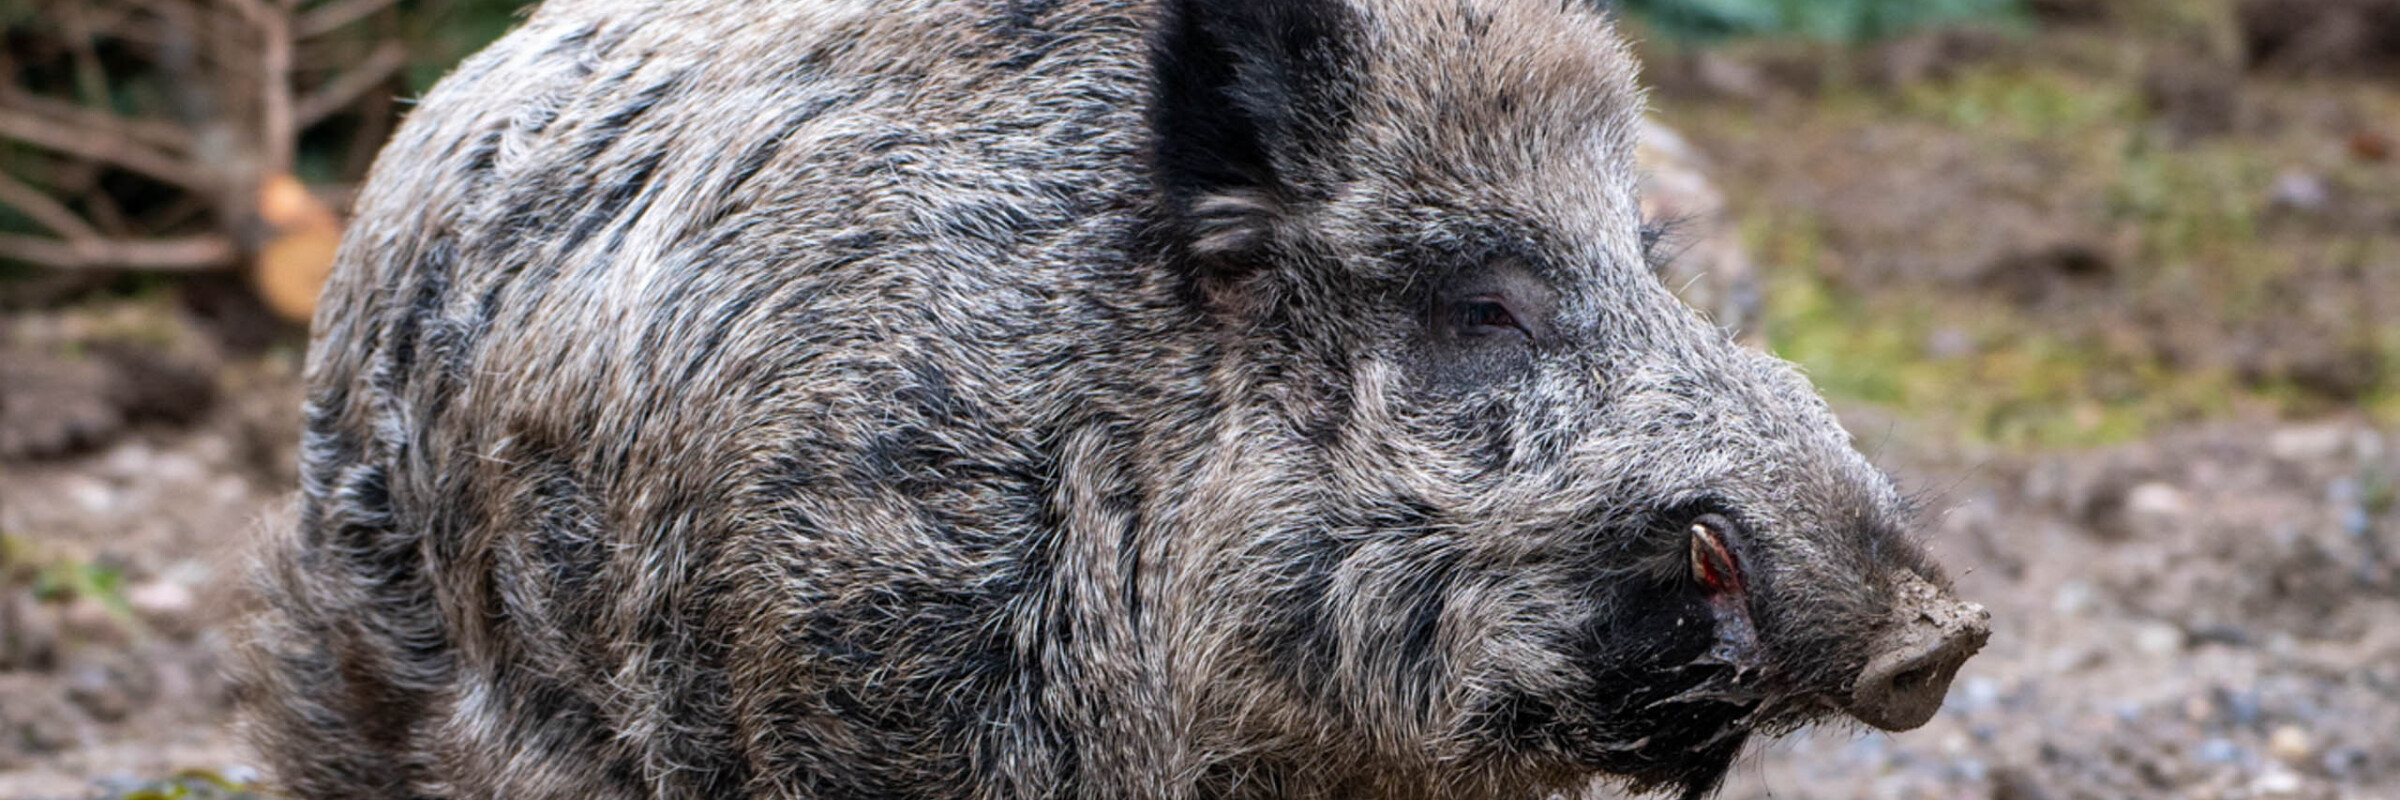 Keiler erkundet die neue provisorische Wildschweinanlage im Natur- und Tierpark Goldau